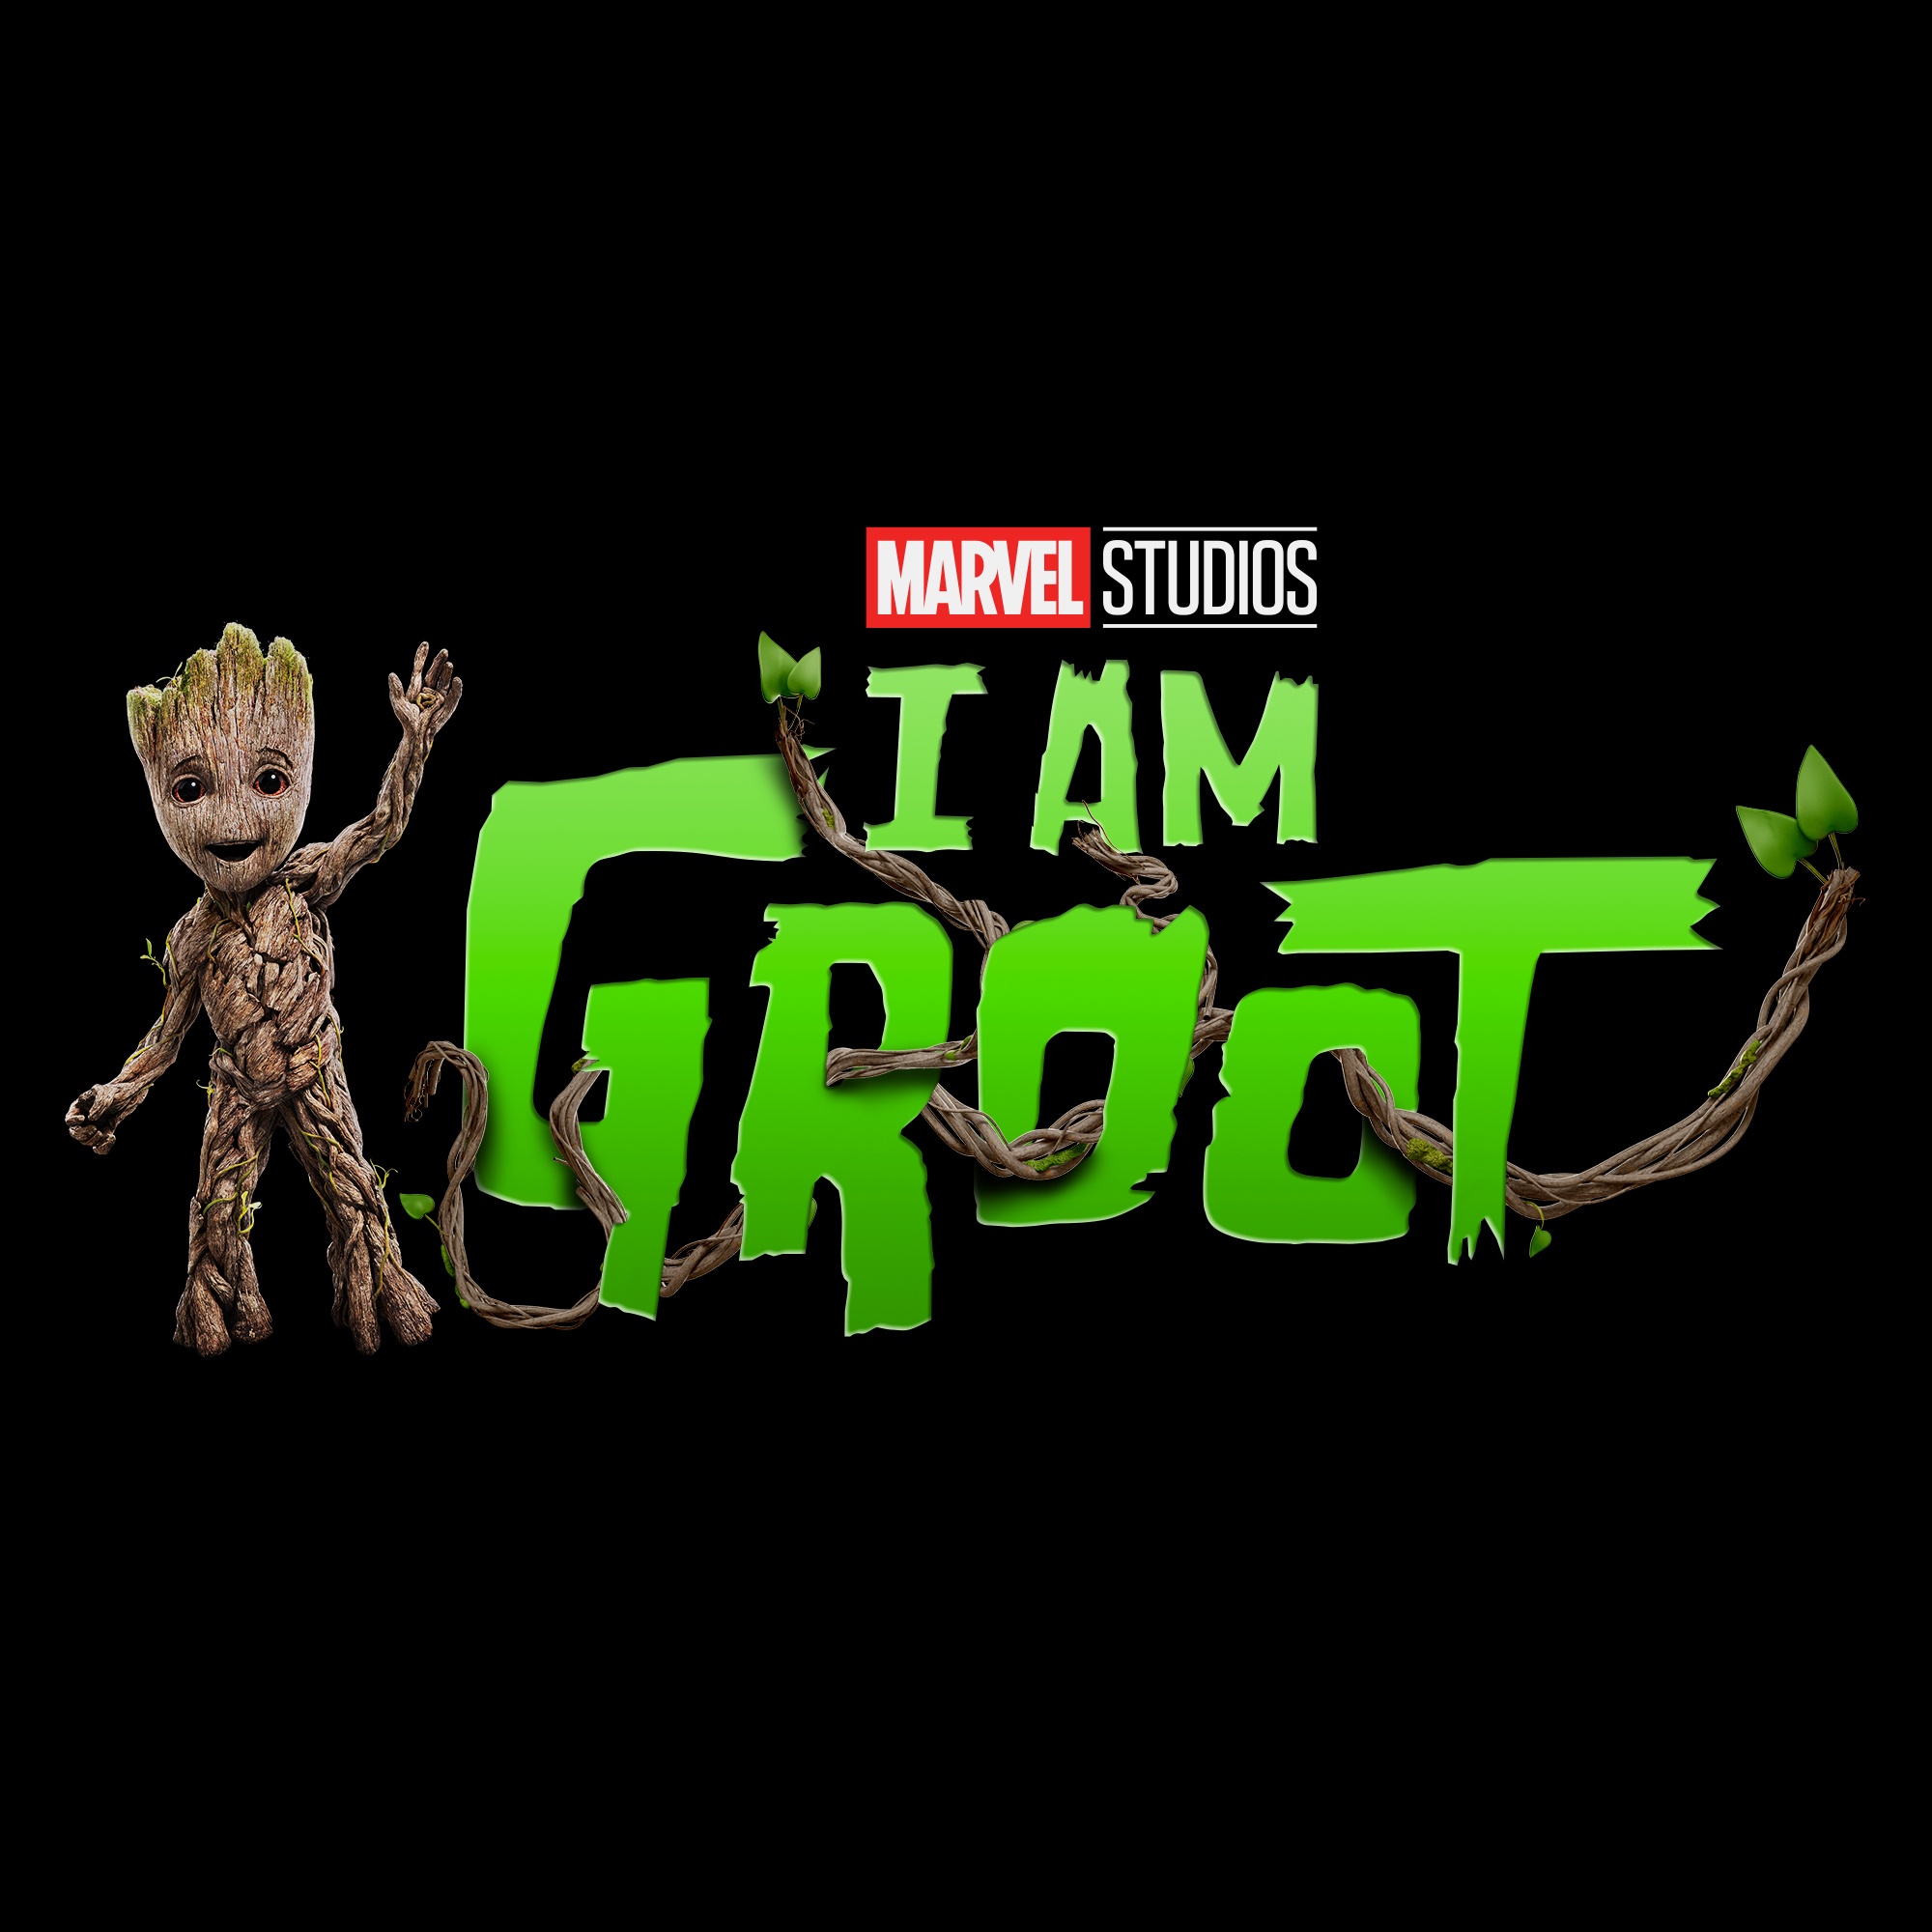 Marvel Studios presenta la serie TV I Am Groot, spin-off de I Guardiani della Galassia